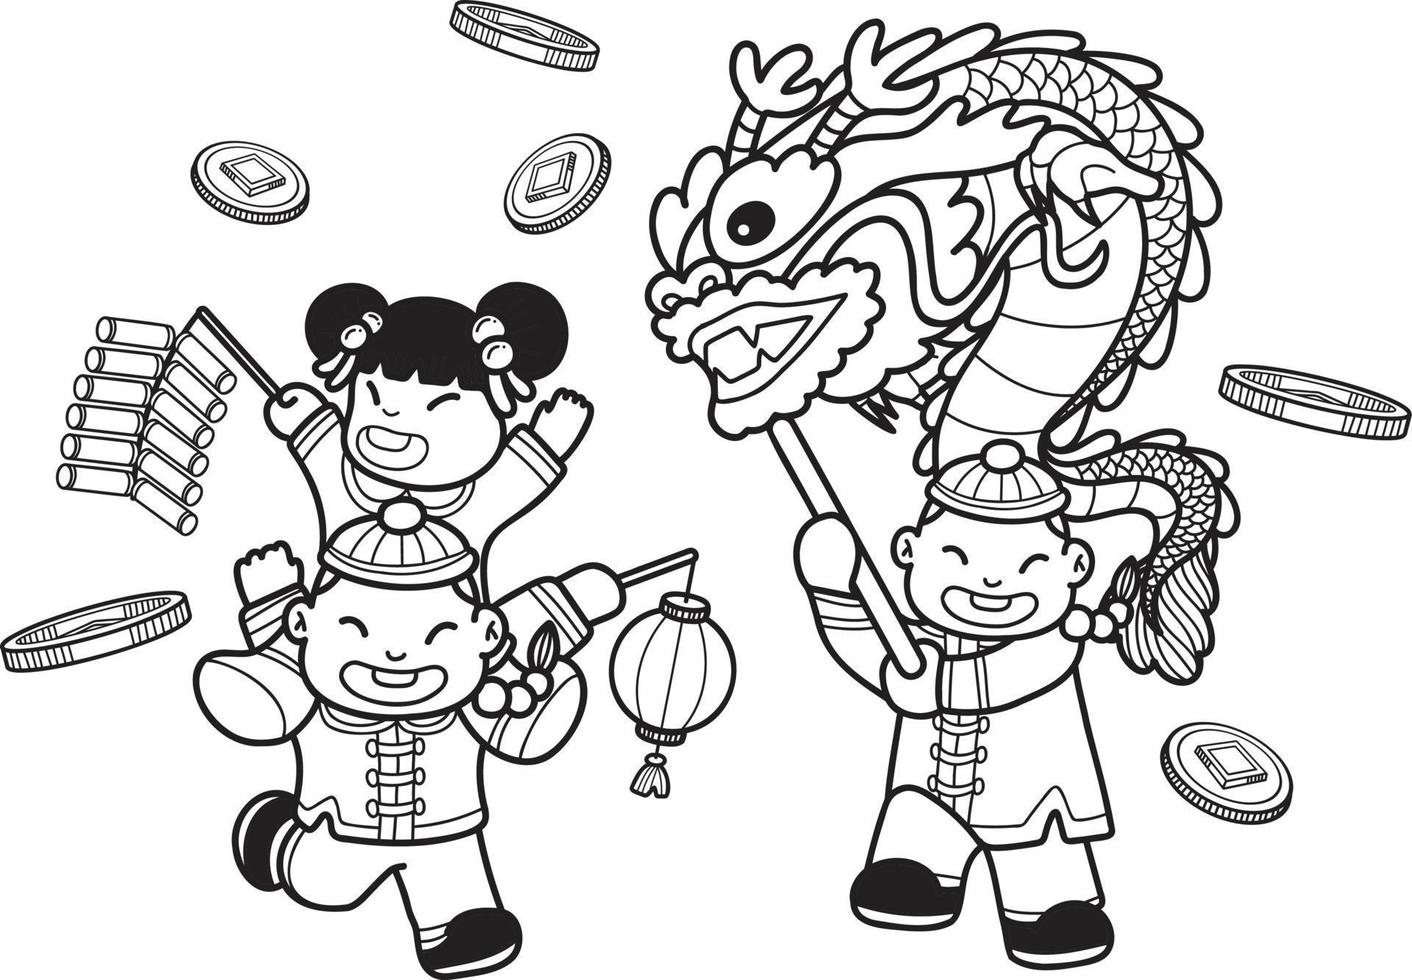 handgezeichnete chinesische kinder tanzen drachen und haben spaß an der illustration vektor